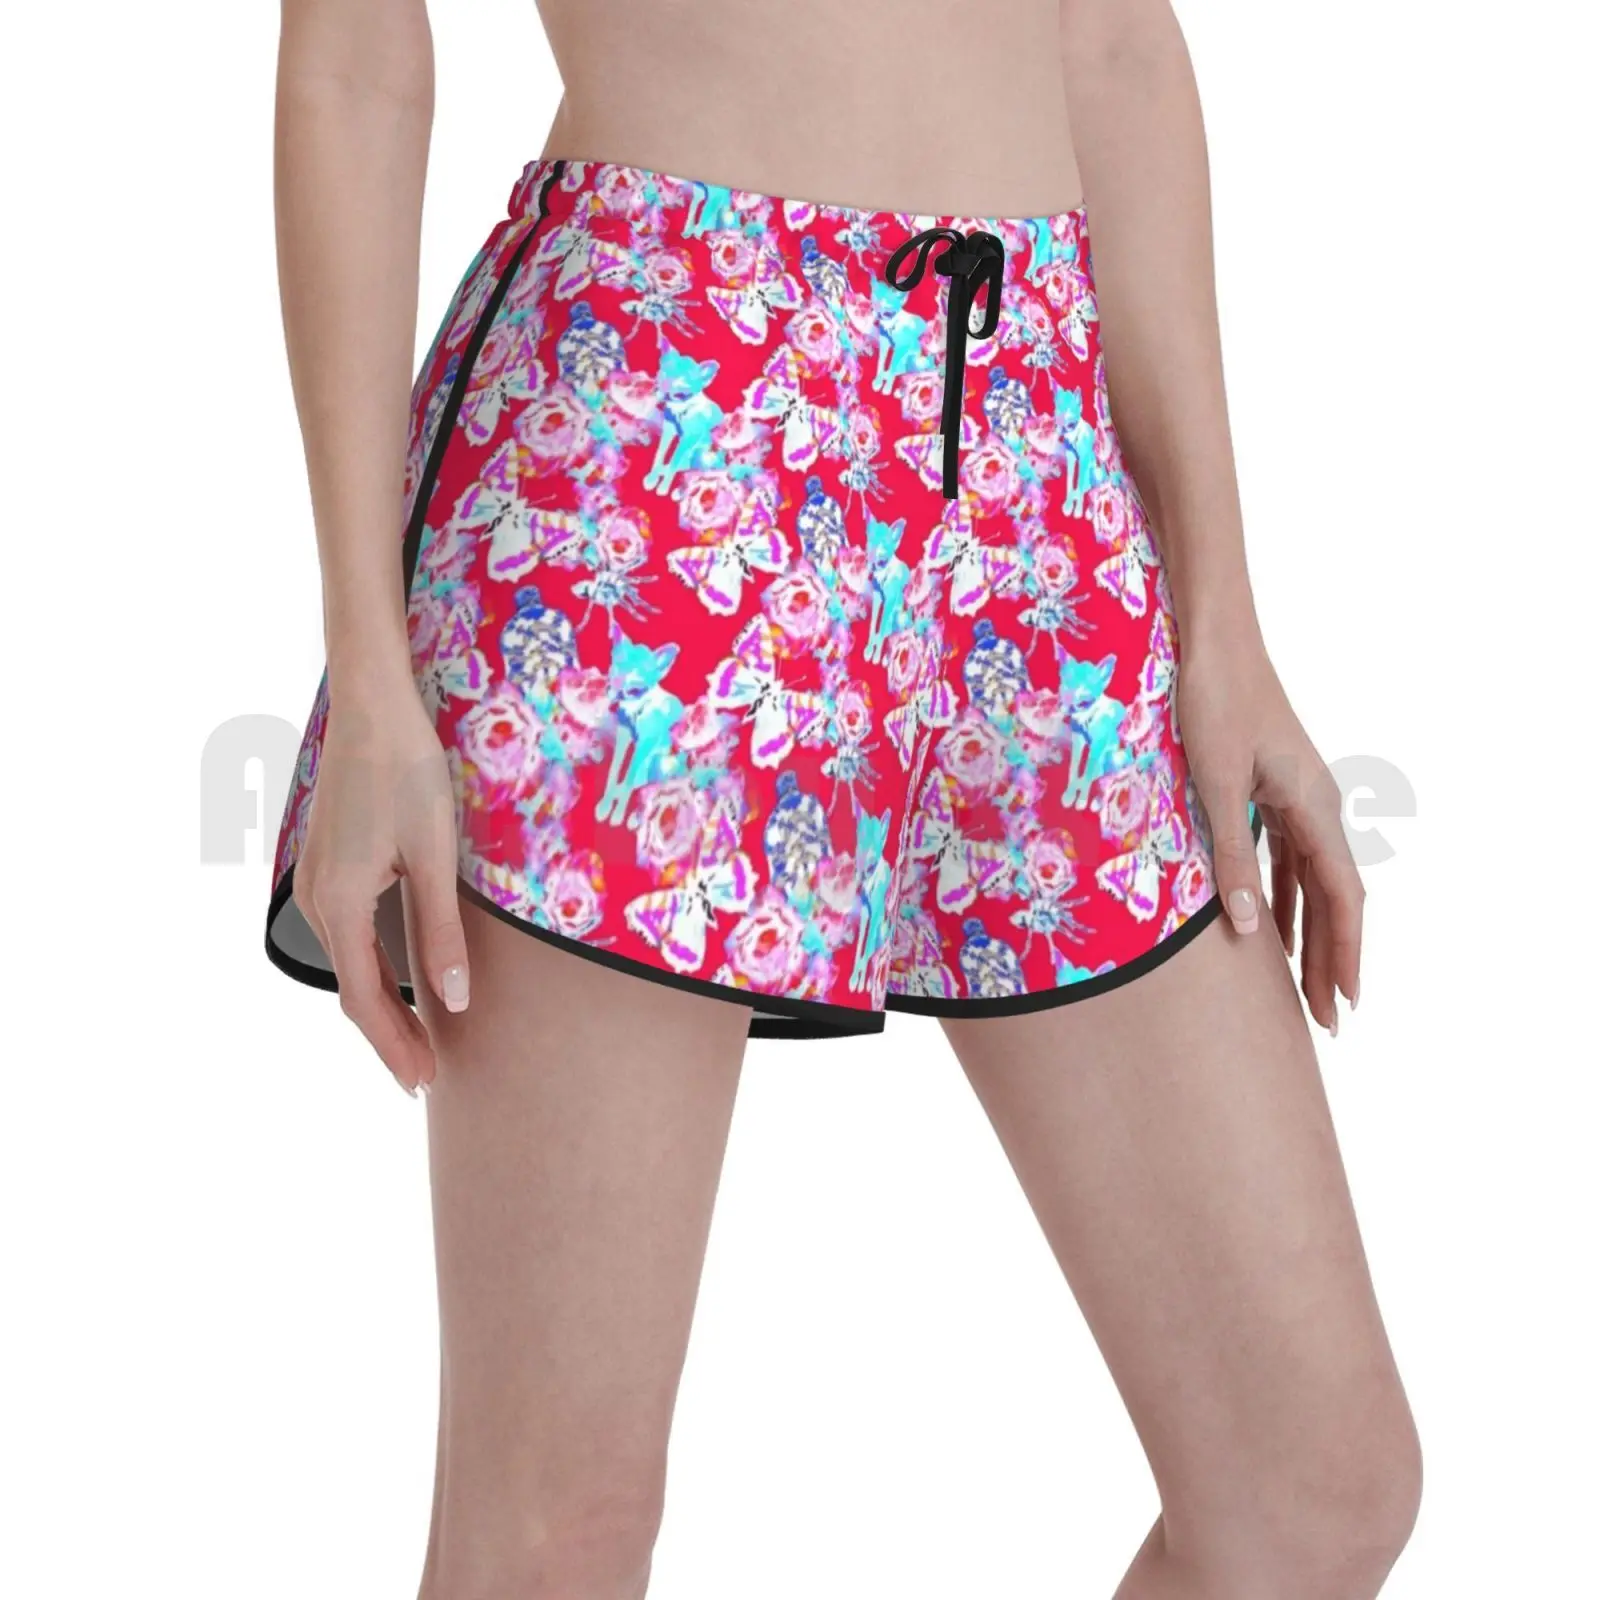 

Женские пляжные шорты для плавания Fox Daydream, пляжные шорты с изображением лисы, бабочек, леса, природных цветов, лето 2866